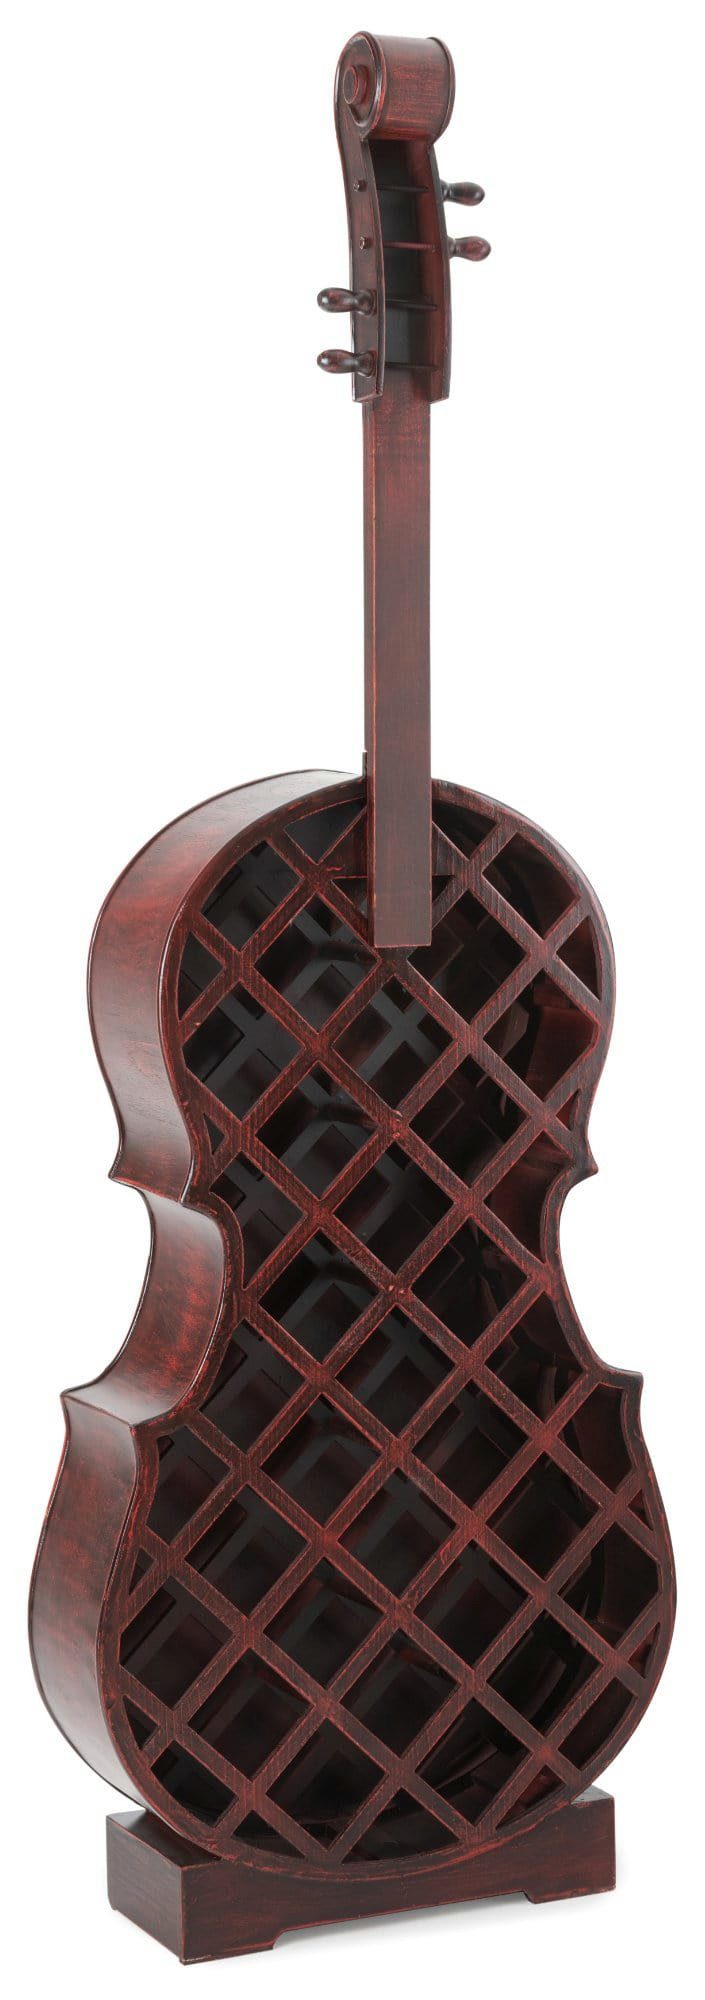 Stagecaptain Weinregal WRS-25 Stradivino Grande Wein- & Flaschenregal für 25 Flaschen, Weinständer Holz stehend in Vintage-Optik "Cello" Design